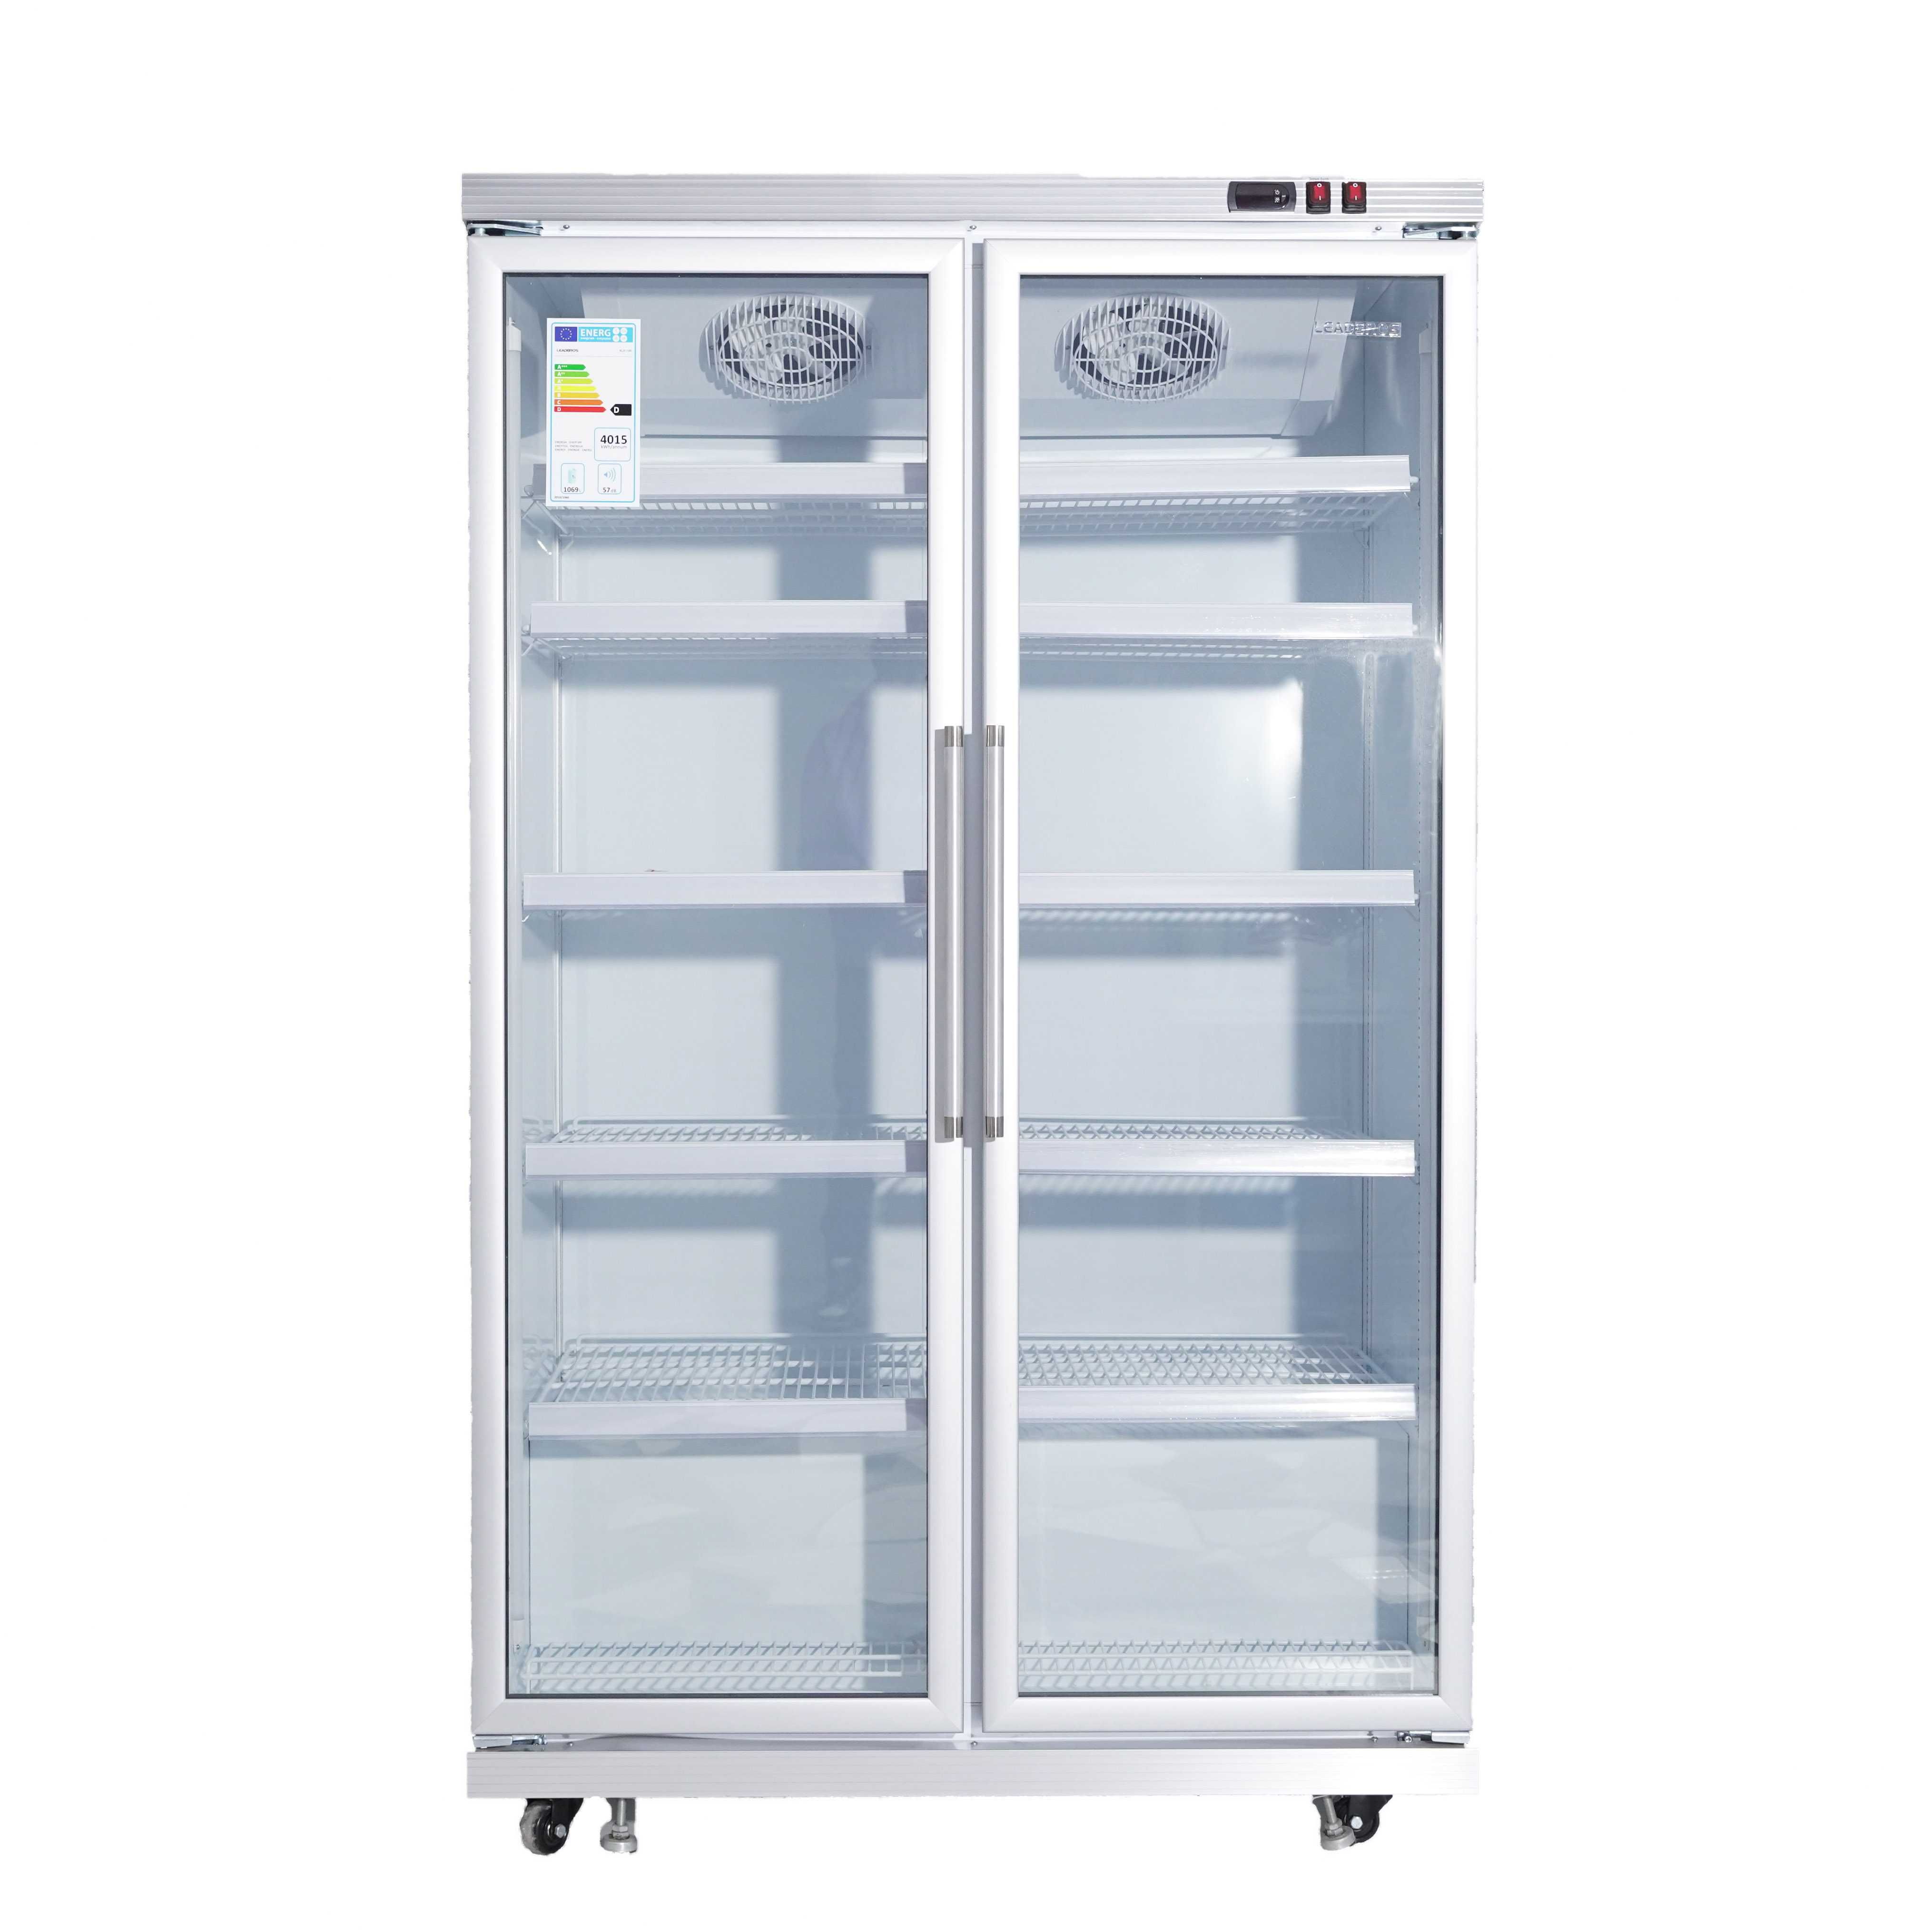 Витринный Холодильник шкаф, Лучшие цены. В Караганде. Гарантия.